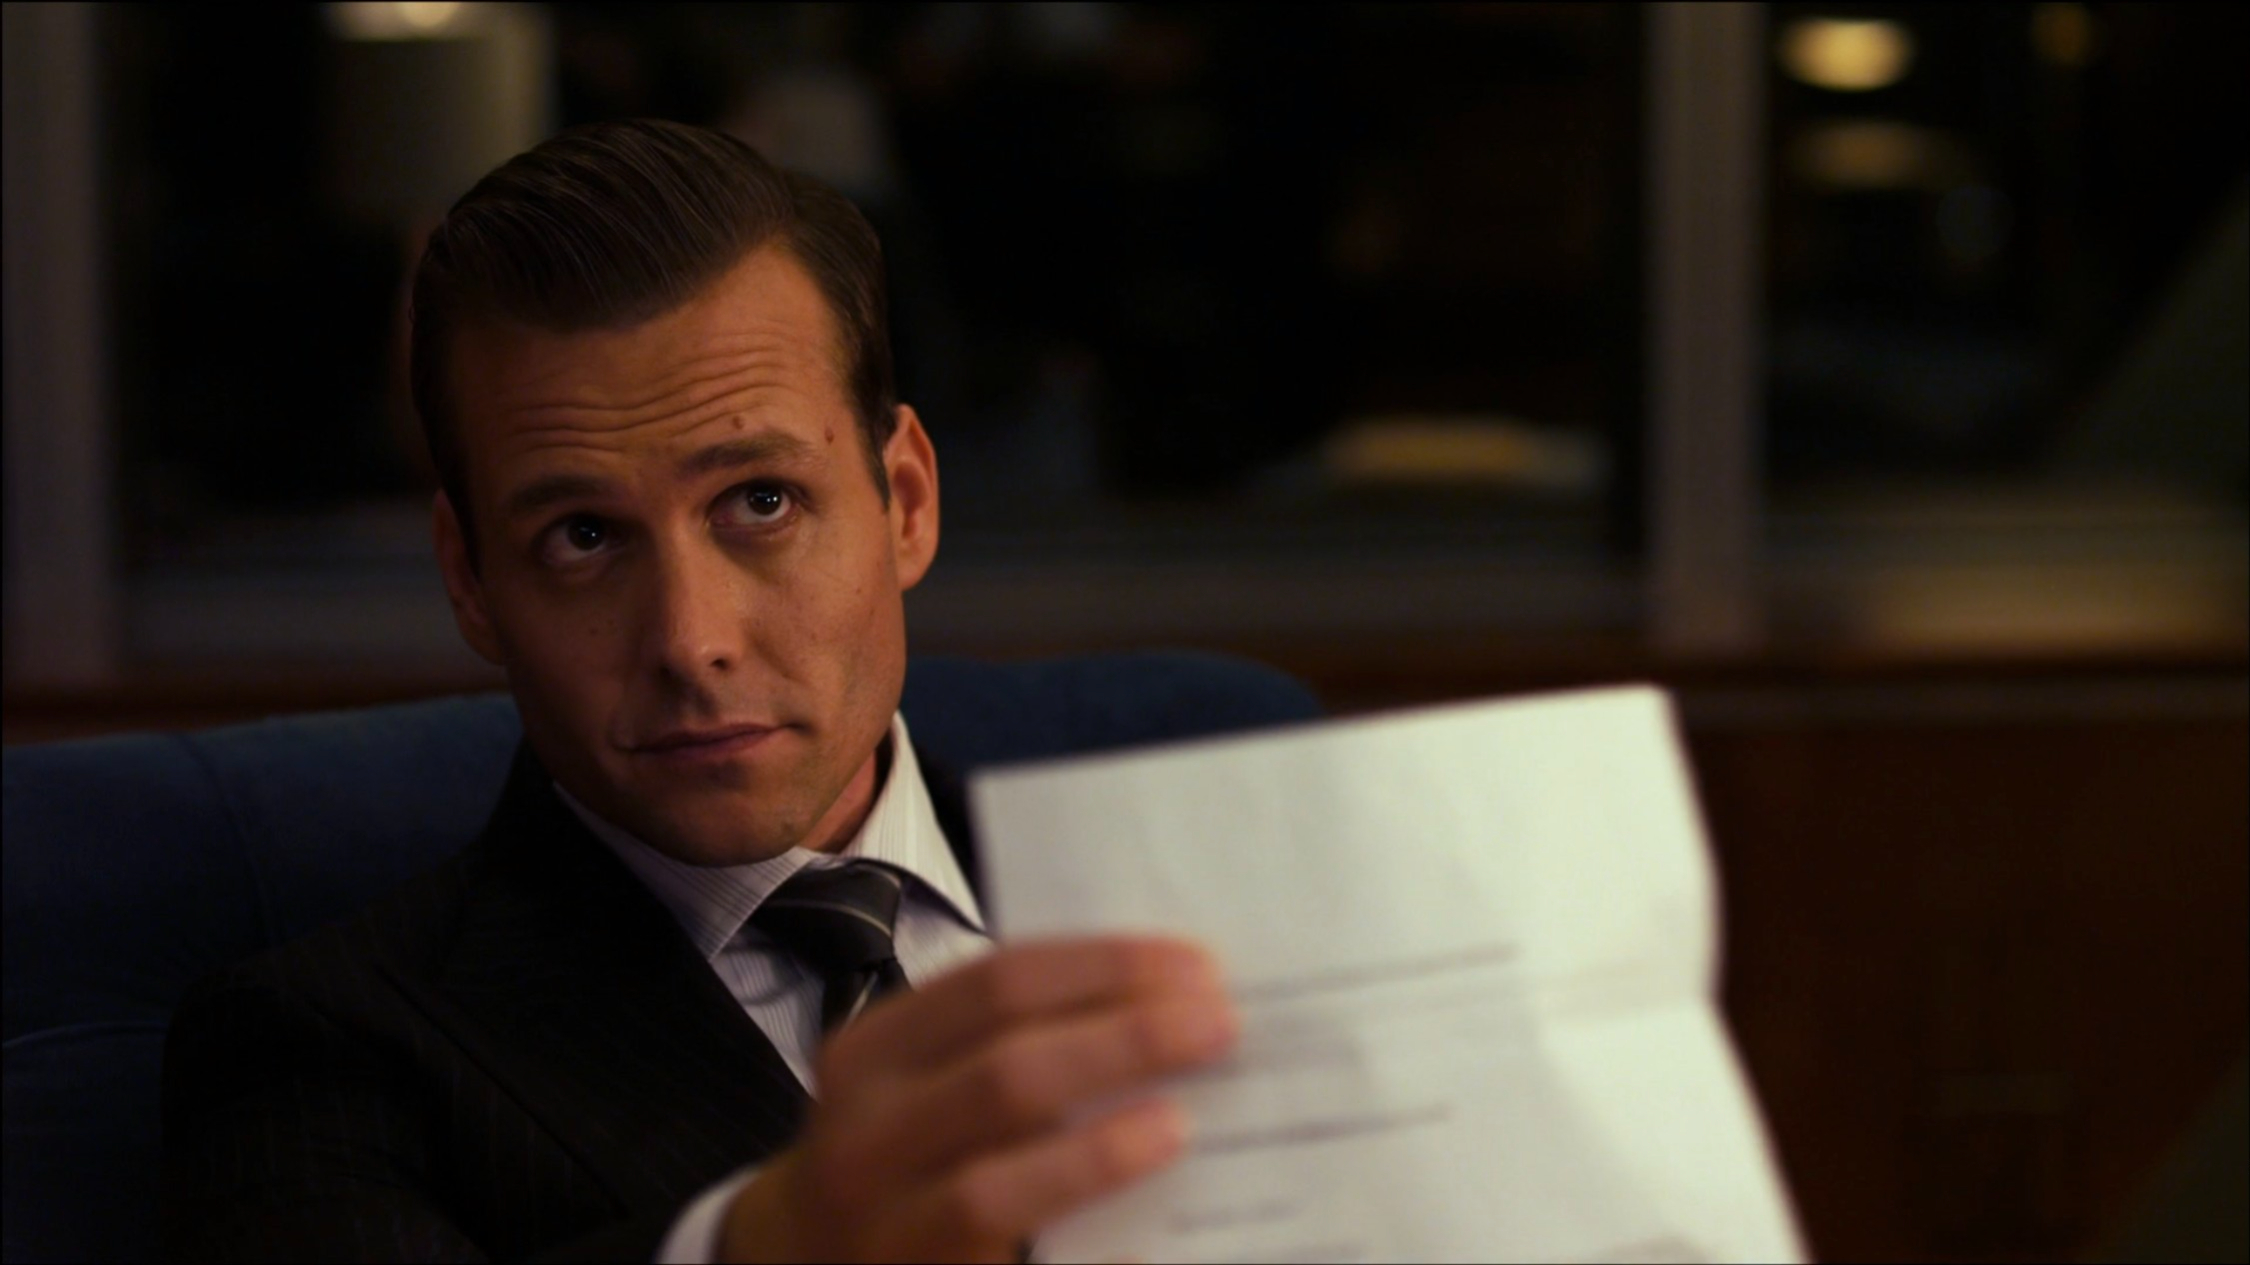 Suits: Gabriel Macht as Harvey Specter